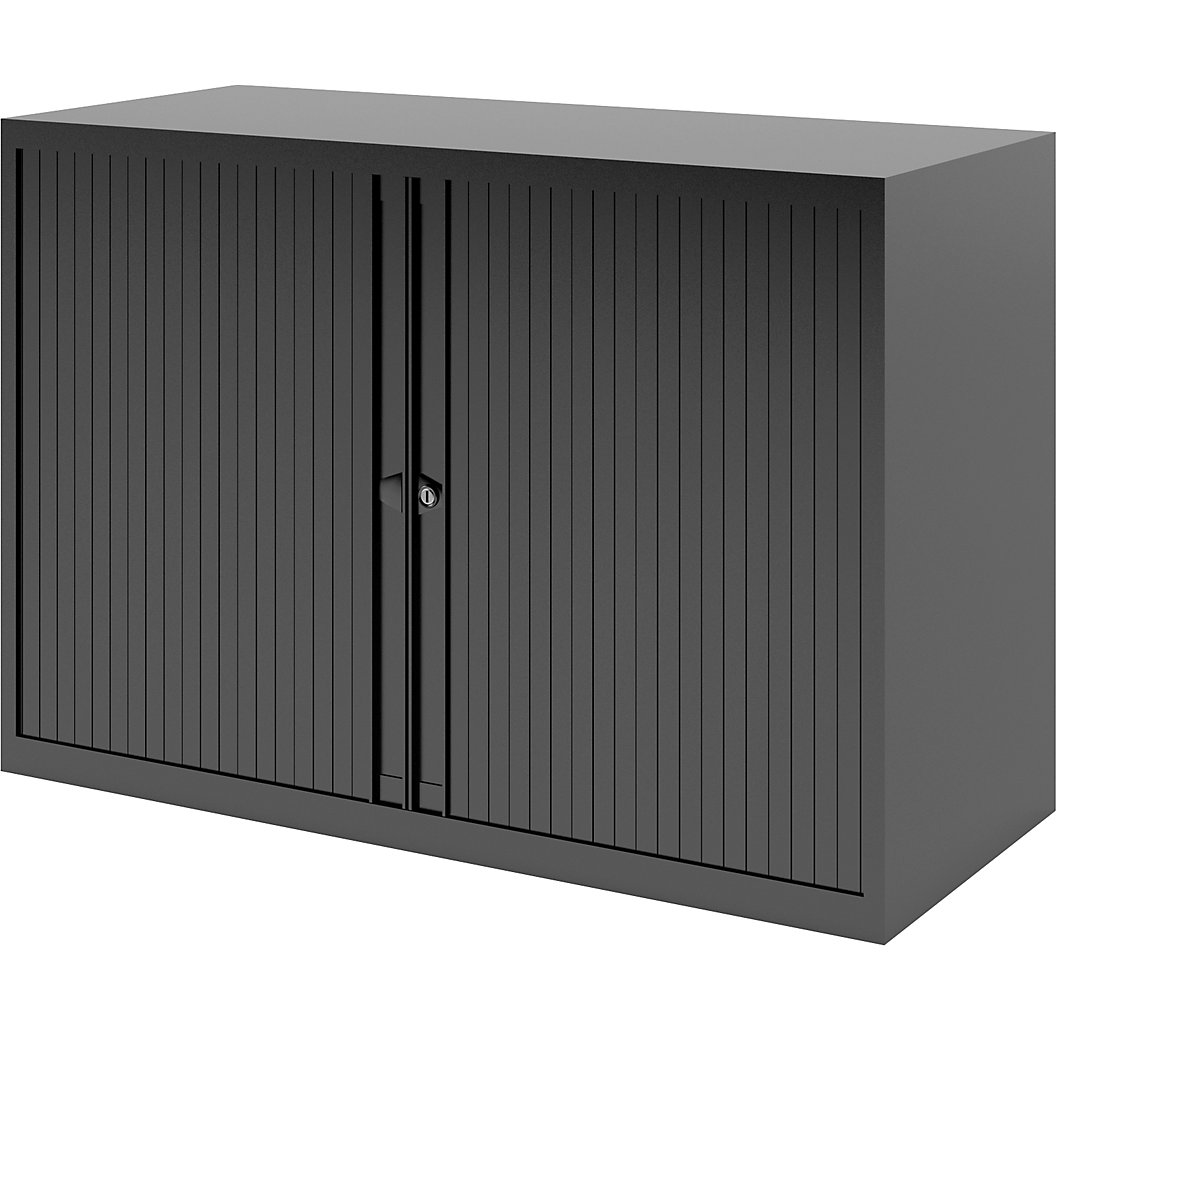 EURO roller shutter cupboard – BISLEY, width 1000 mm, 1 shelf, black-4